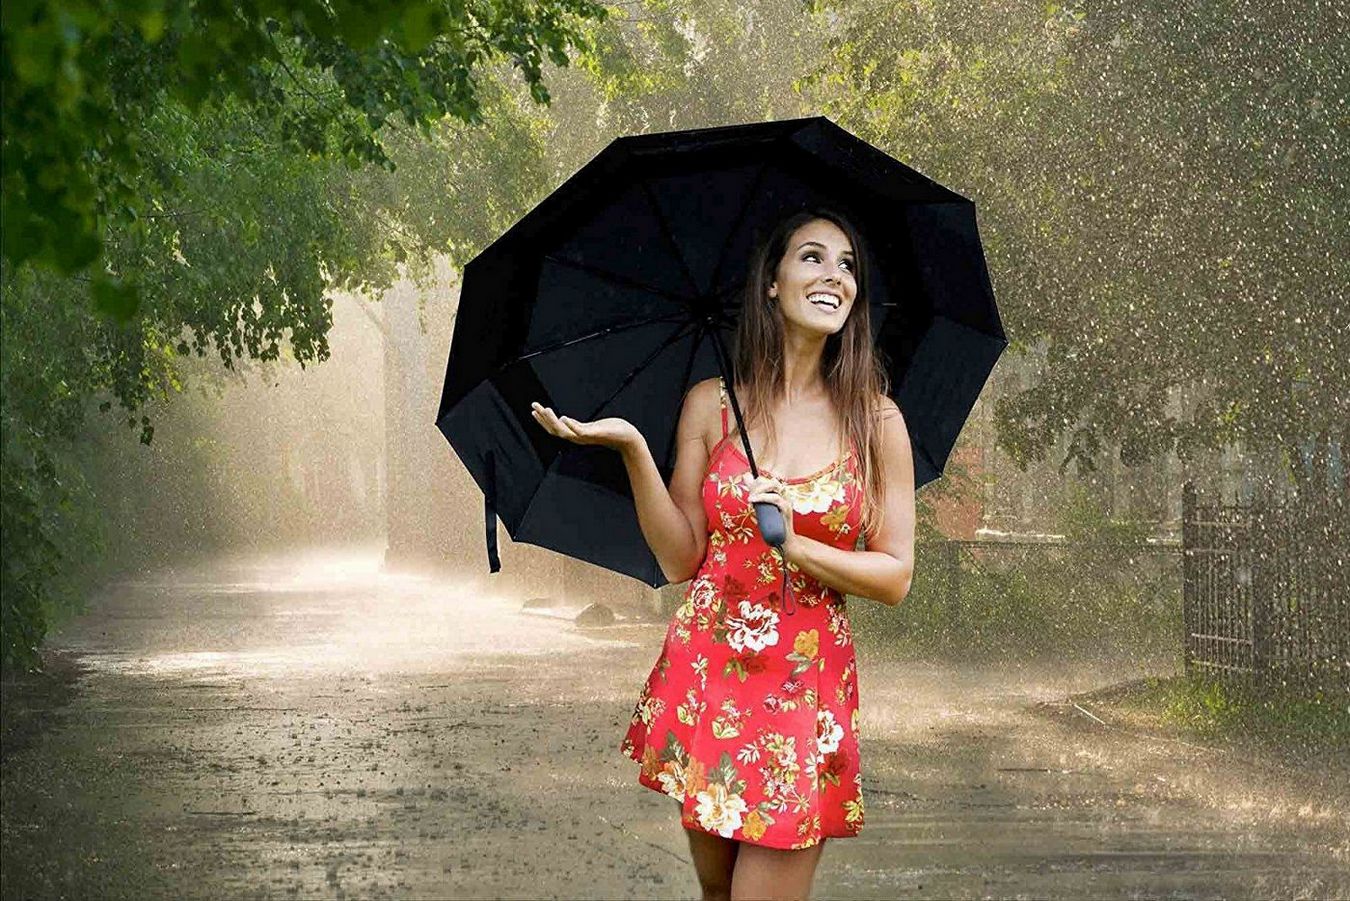 Почти голая студентка с милой улыбкой под зонтом